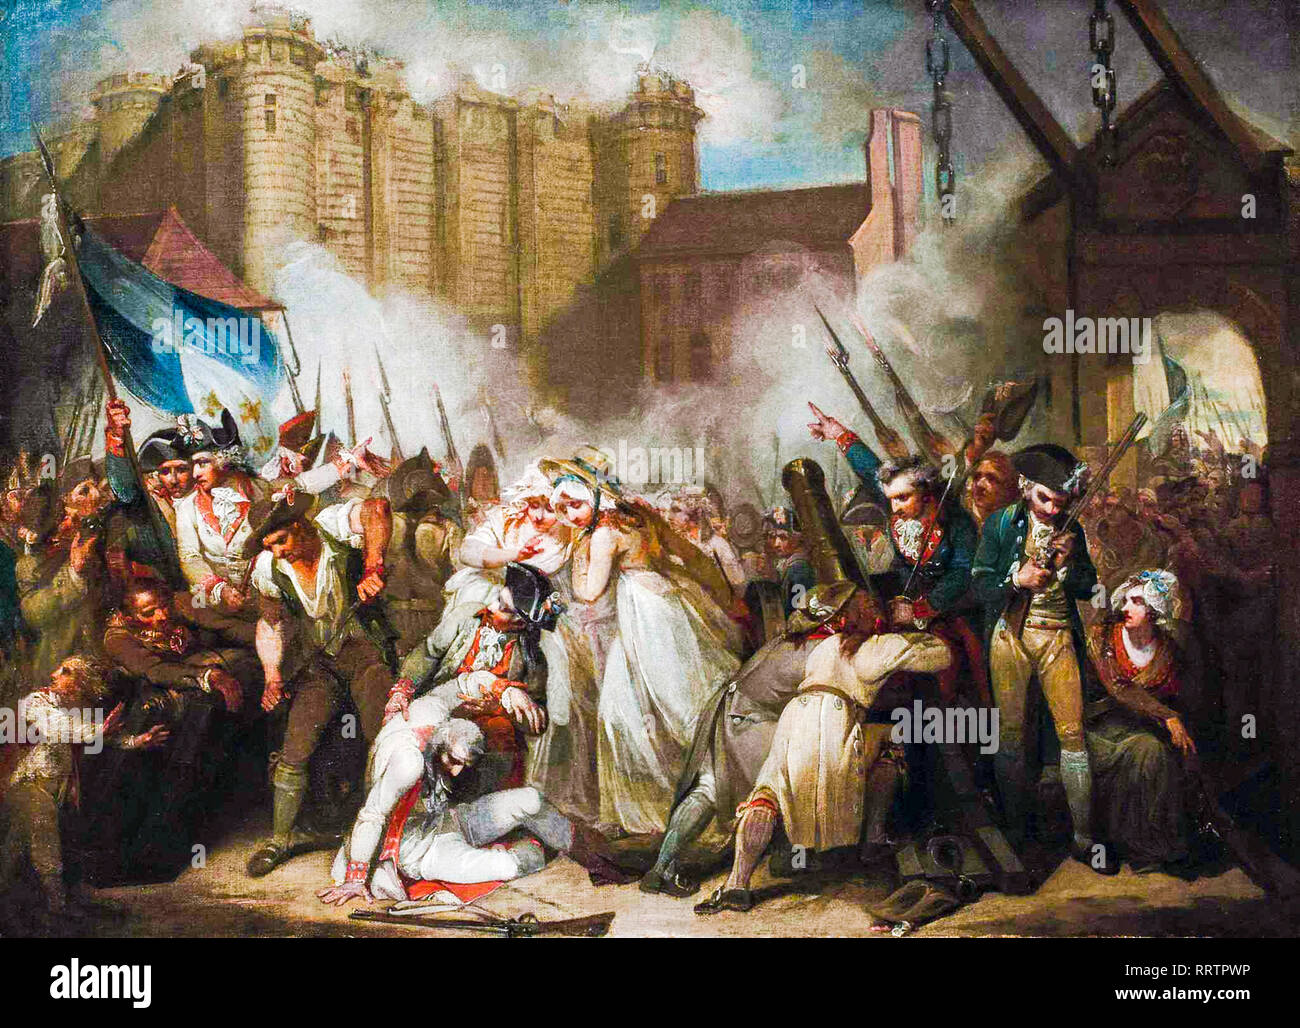 L'histoire de la Bastille, peinture de la Révolution française par Henry Singleton, avant 1839 Banque D'Images